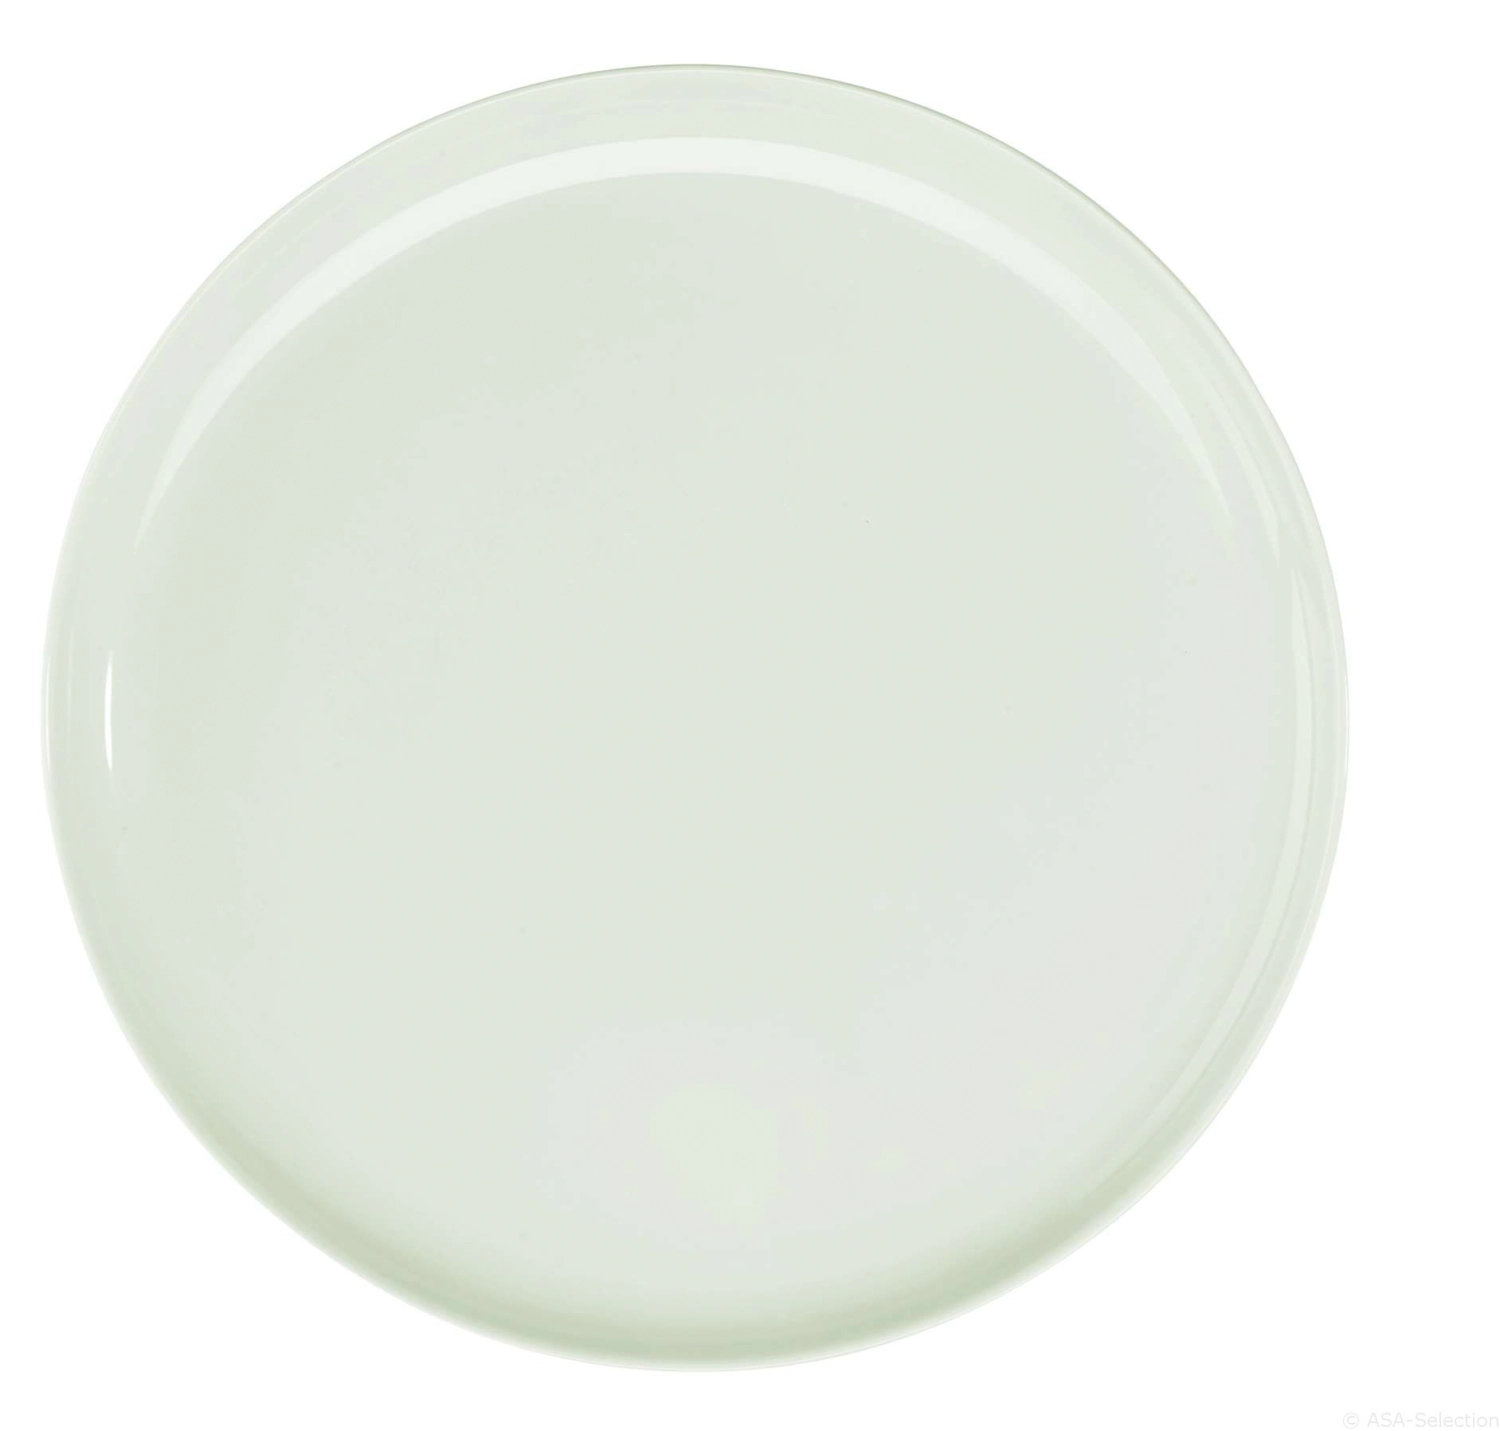 Colibri assiette plate blanc 26.5cm